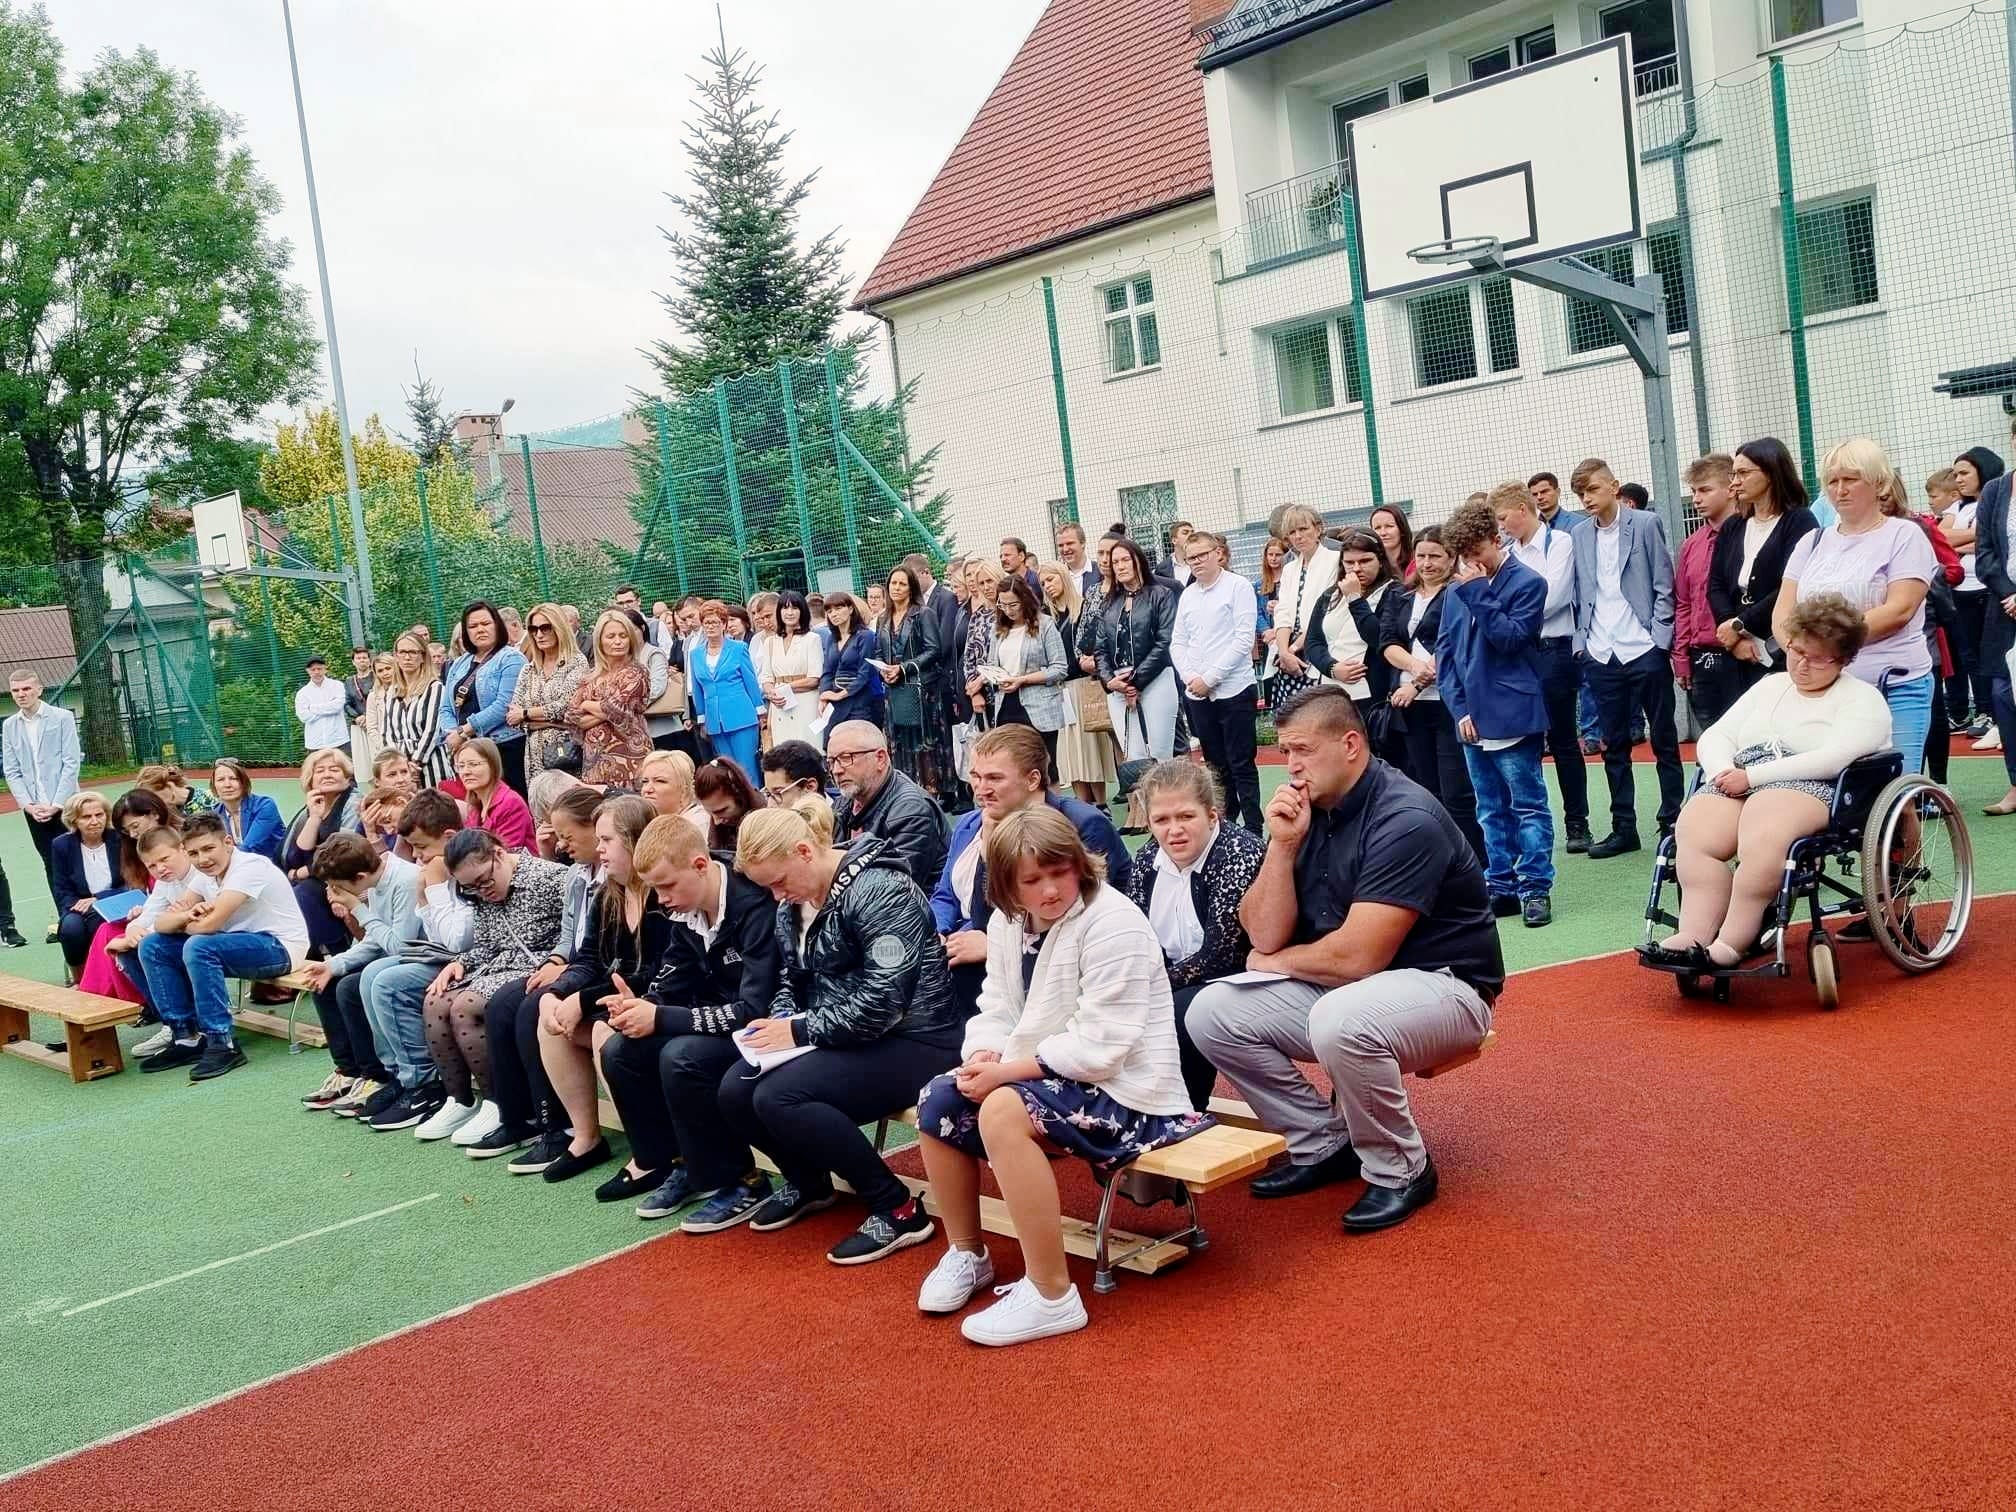 na boisku szkolnym na ławkach siedzą uczniowie i rodzice, z tyłu stoją uczniowie i rodzice